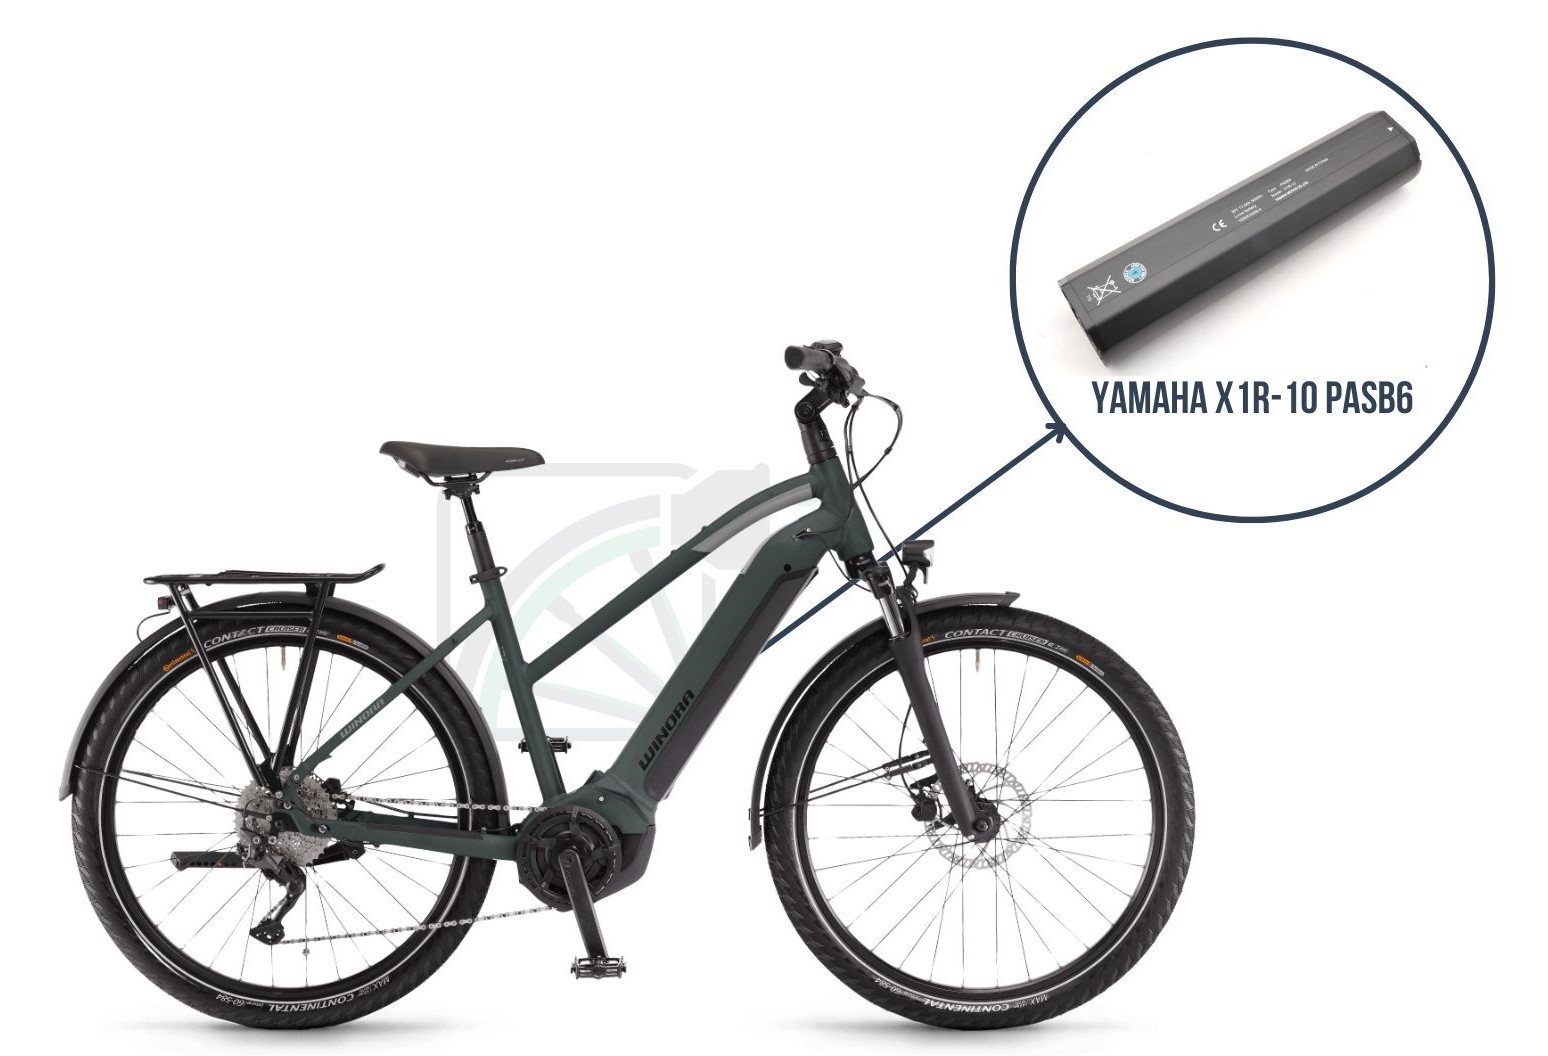  La Winor Yucatan iN7f avec mise en avant de la batterie utilisée sur ce vélo. Il s'agit de la Yamaha X1R-10 PASB6.